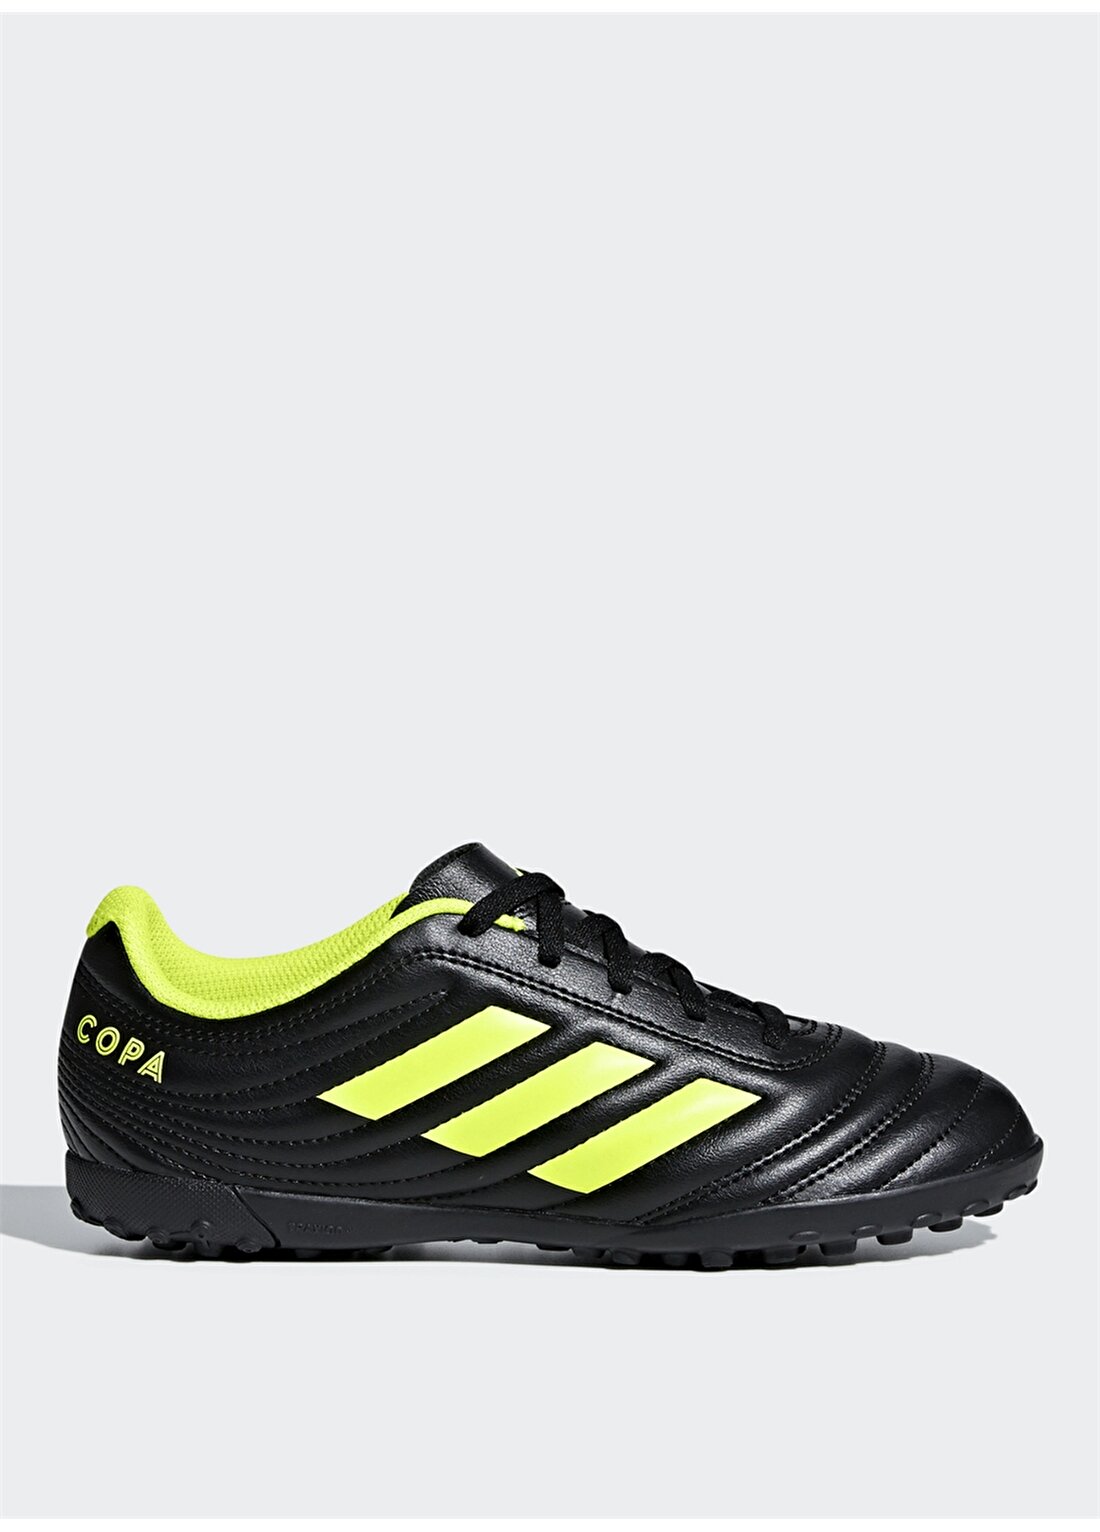 Adidas Copa 19.4 Tf J D98100 Halı Saha Ayakkabısı